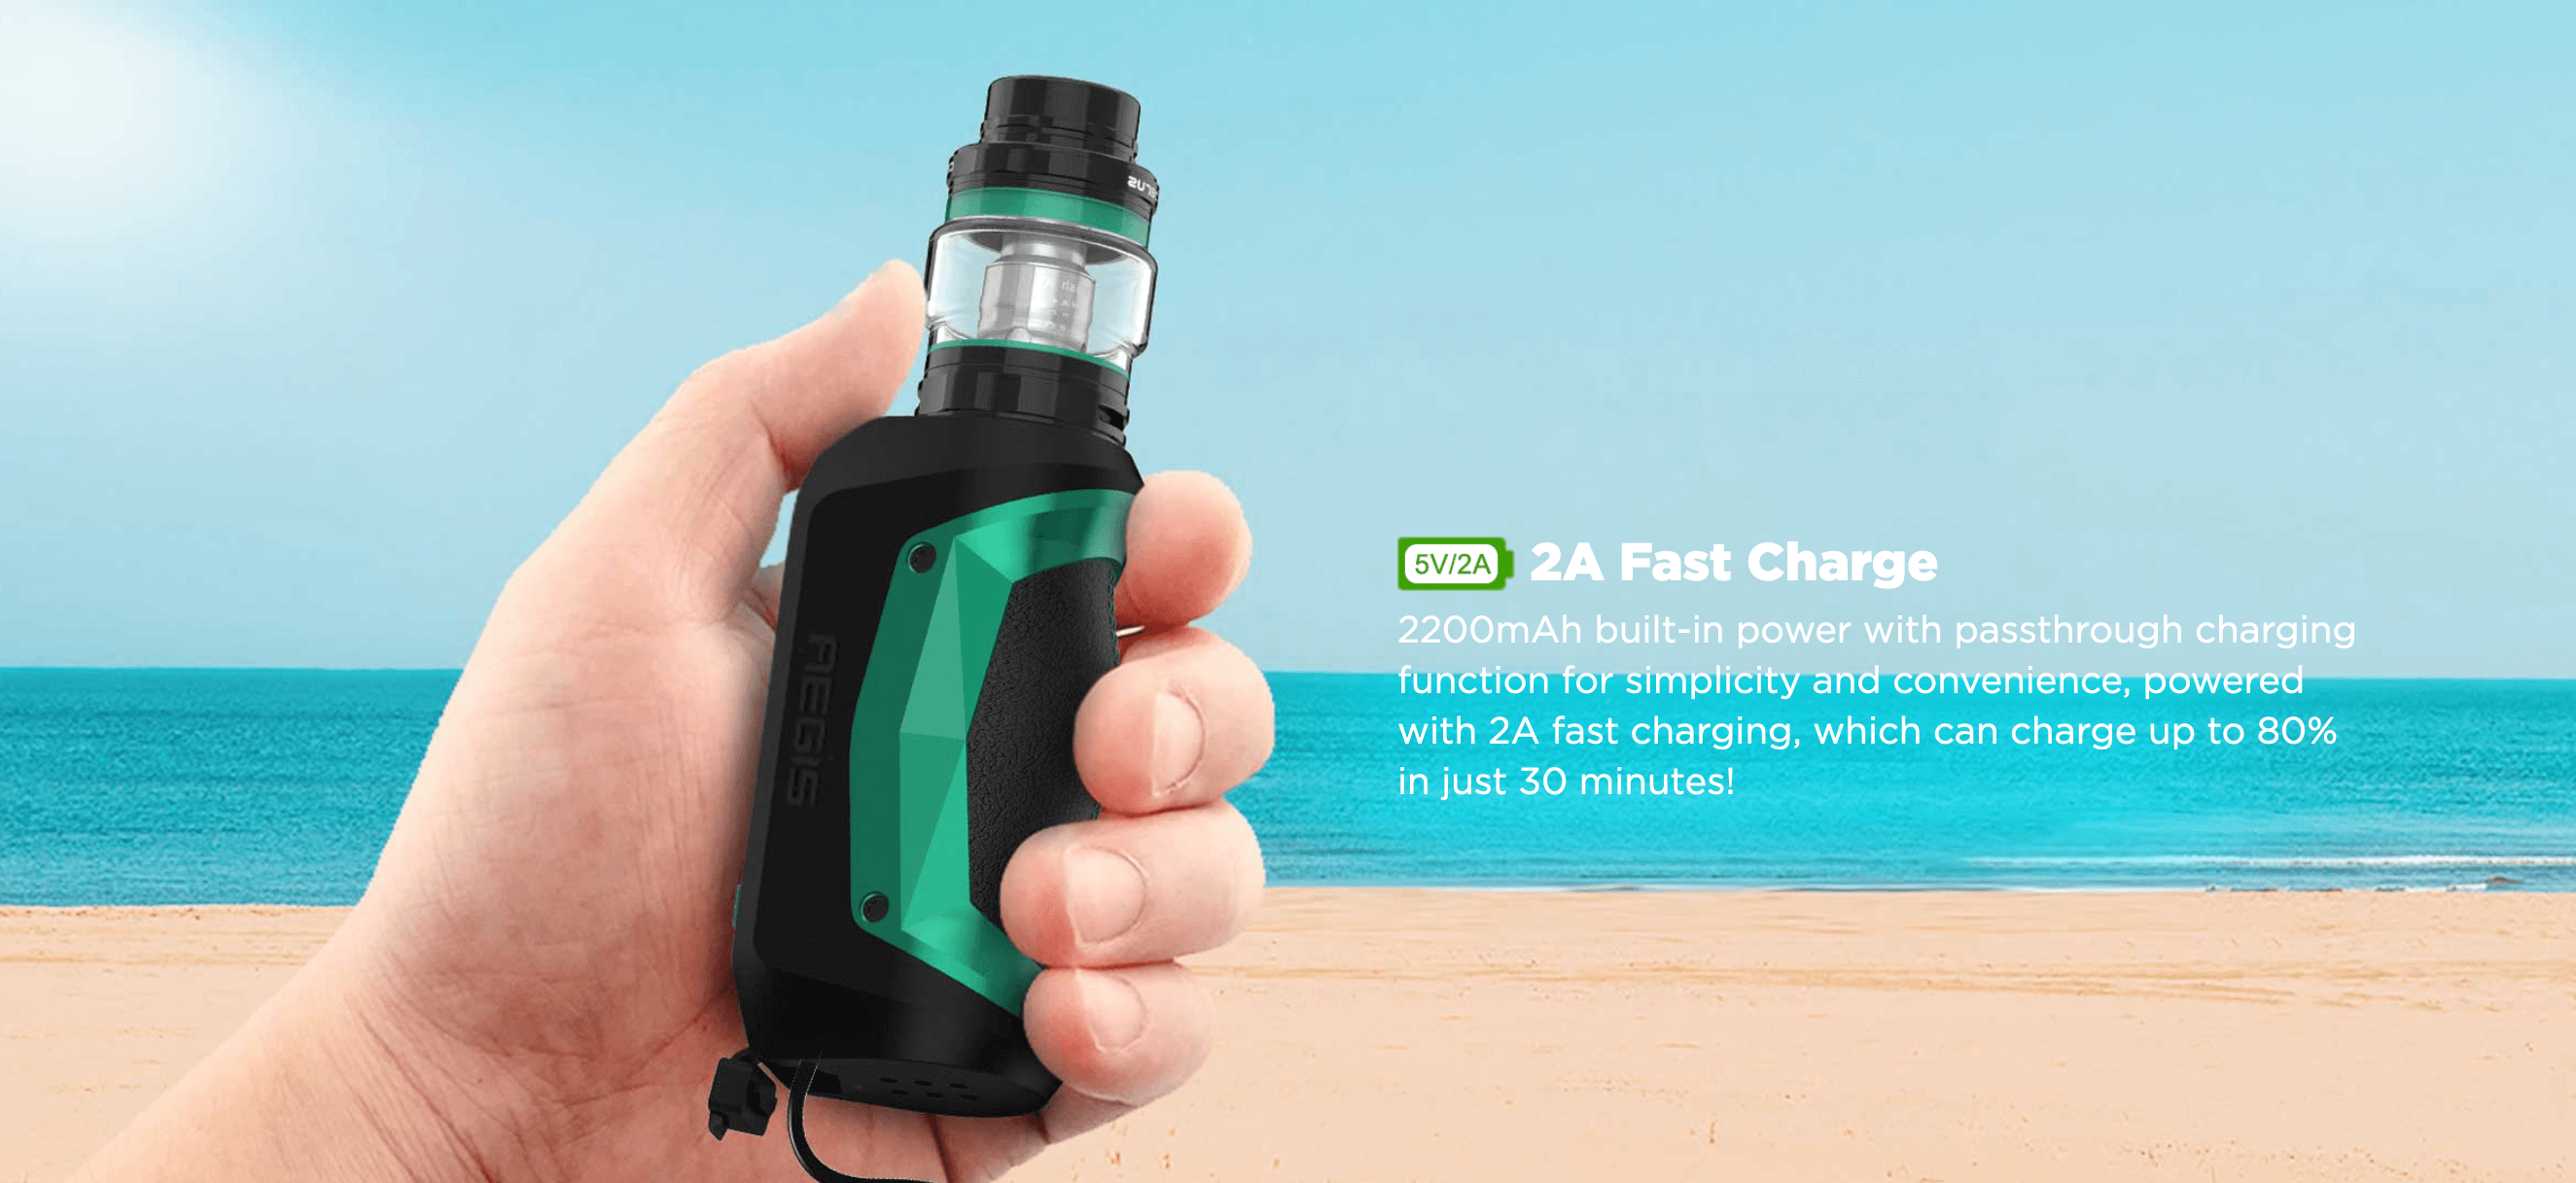 Aegis Mini by Geek Vape | 2A Fast Charge